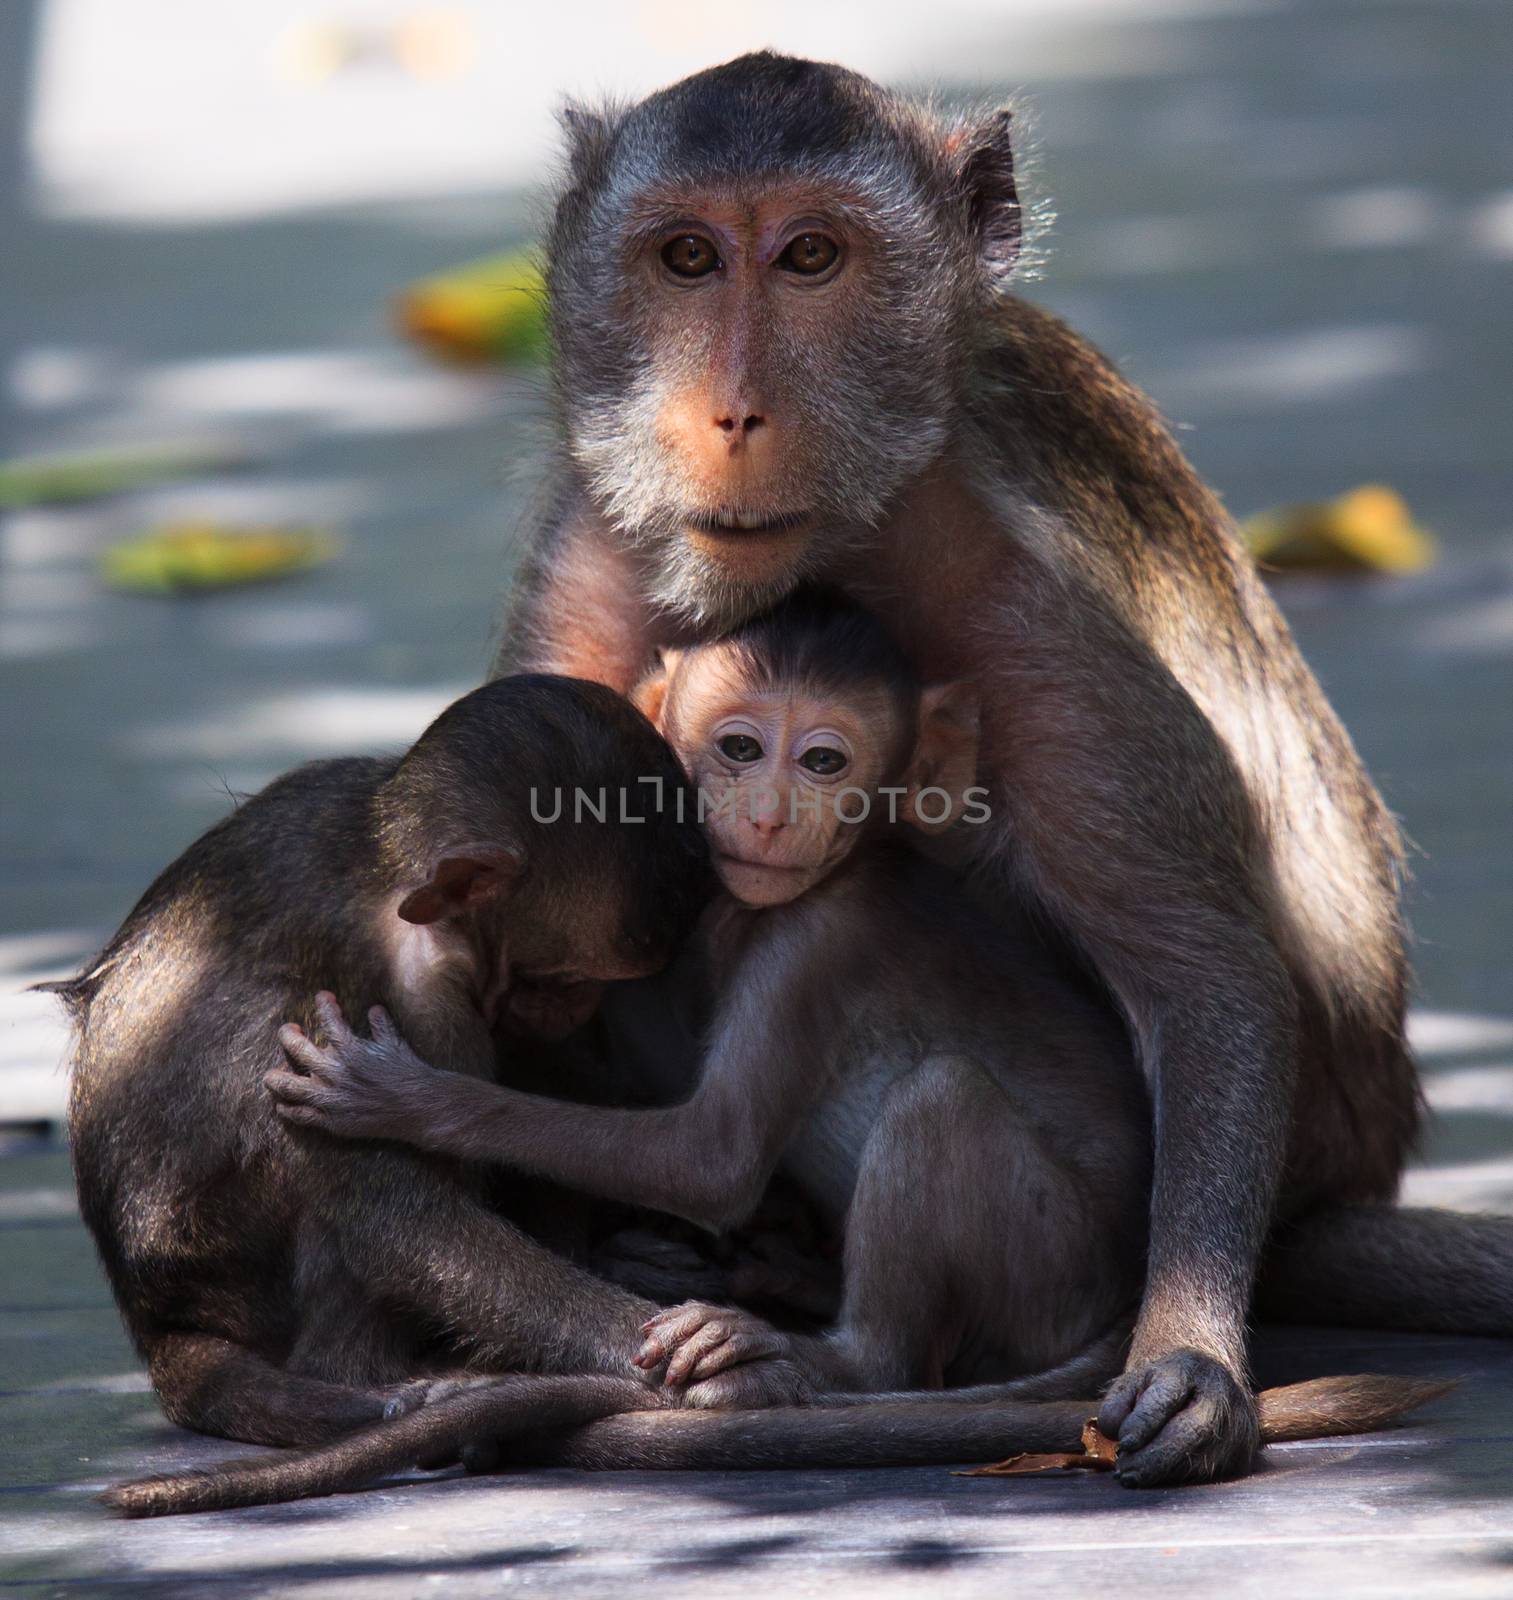 lovely monkey family in wild